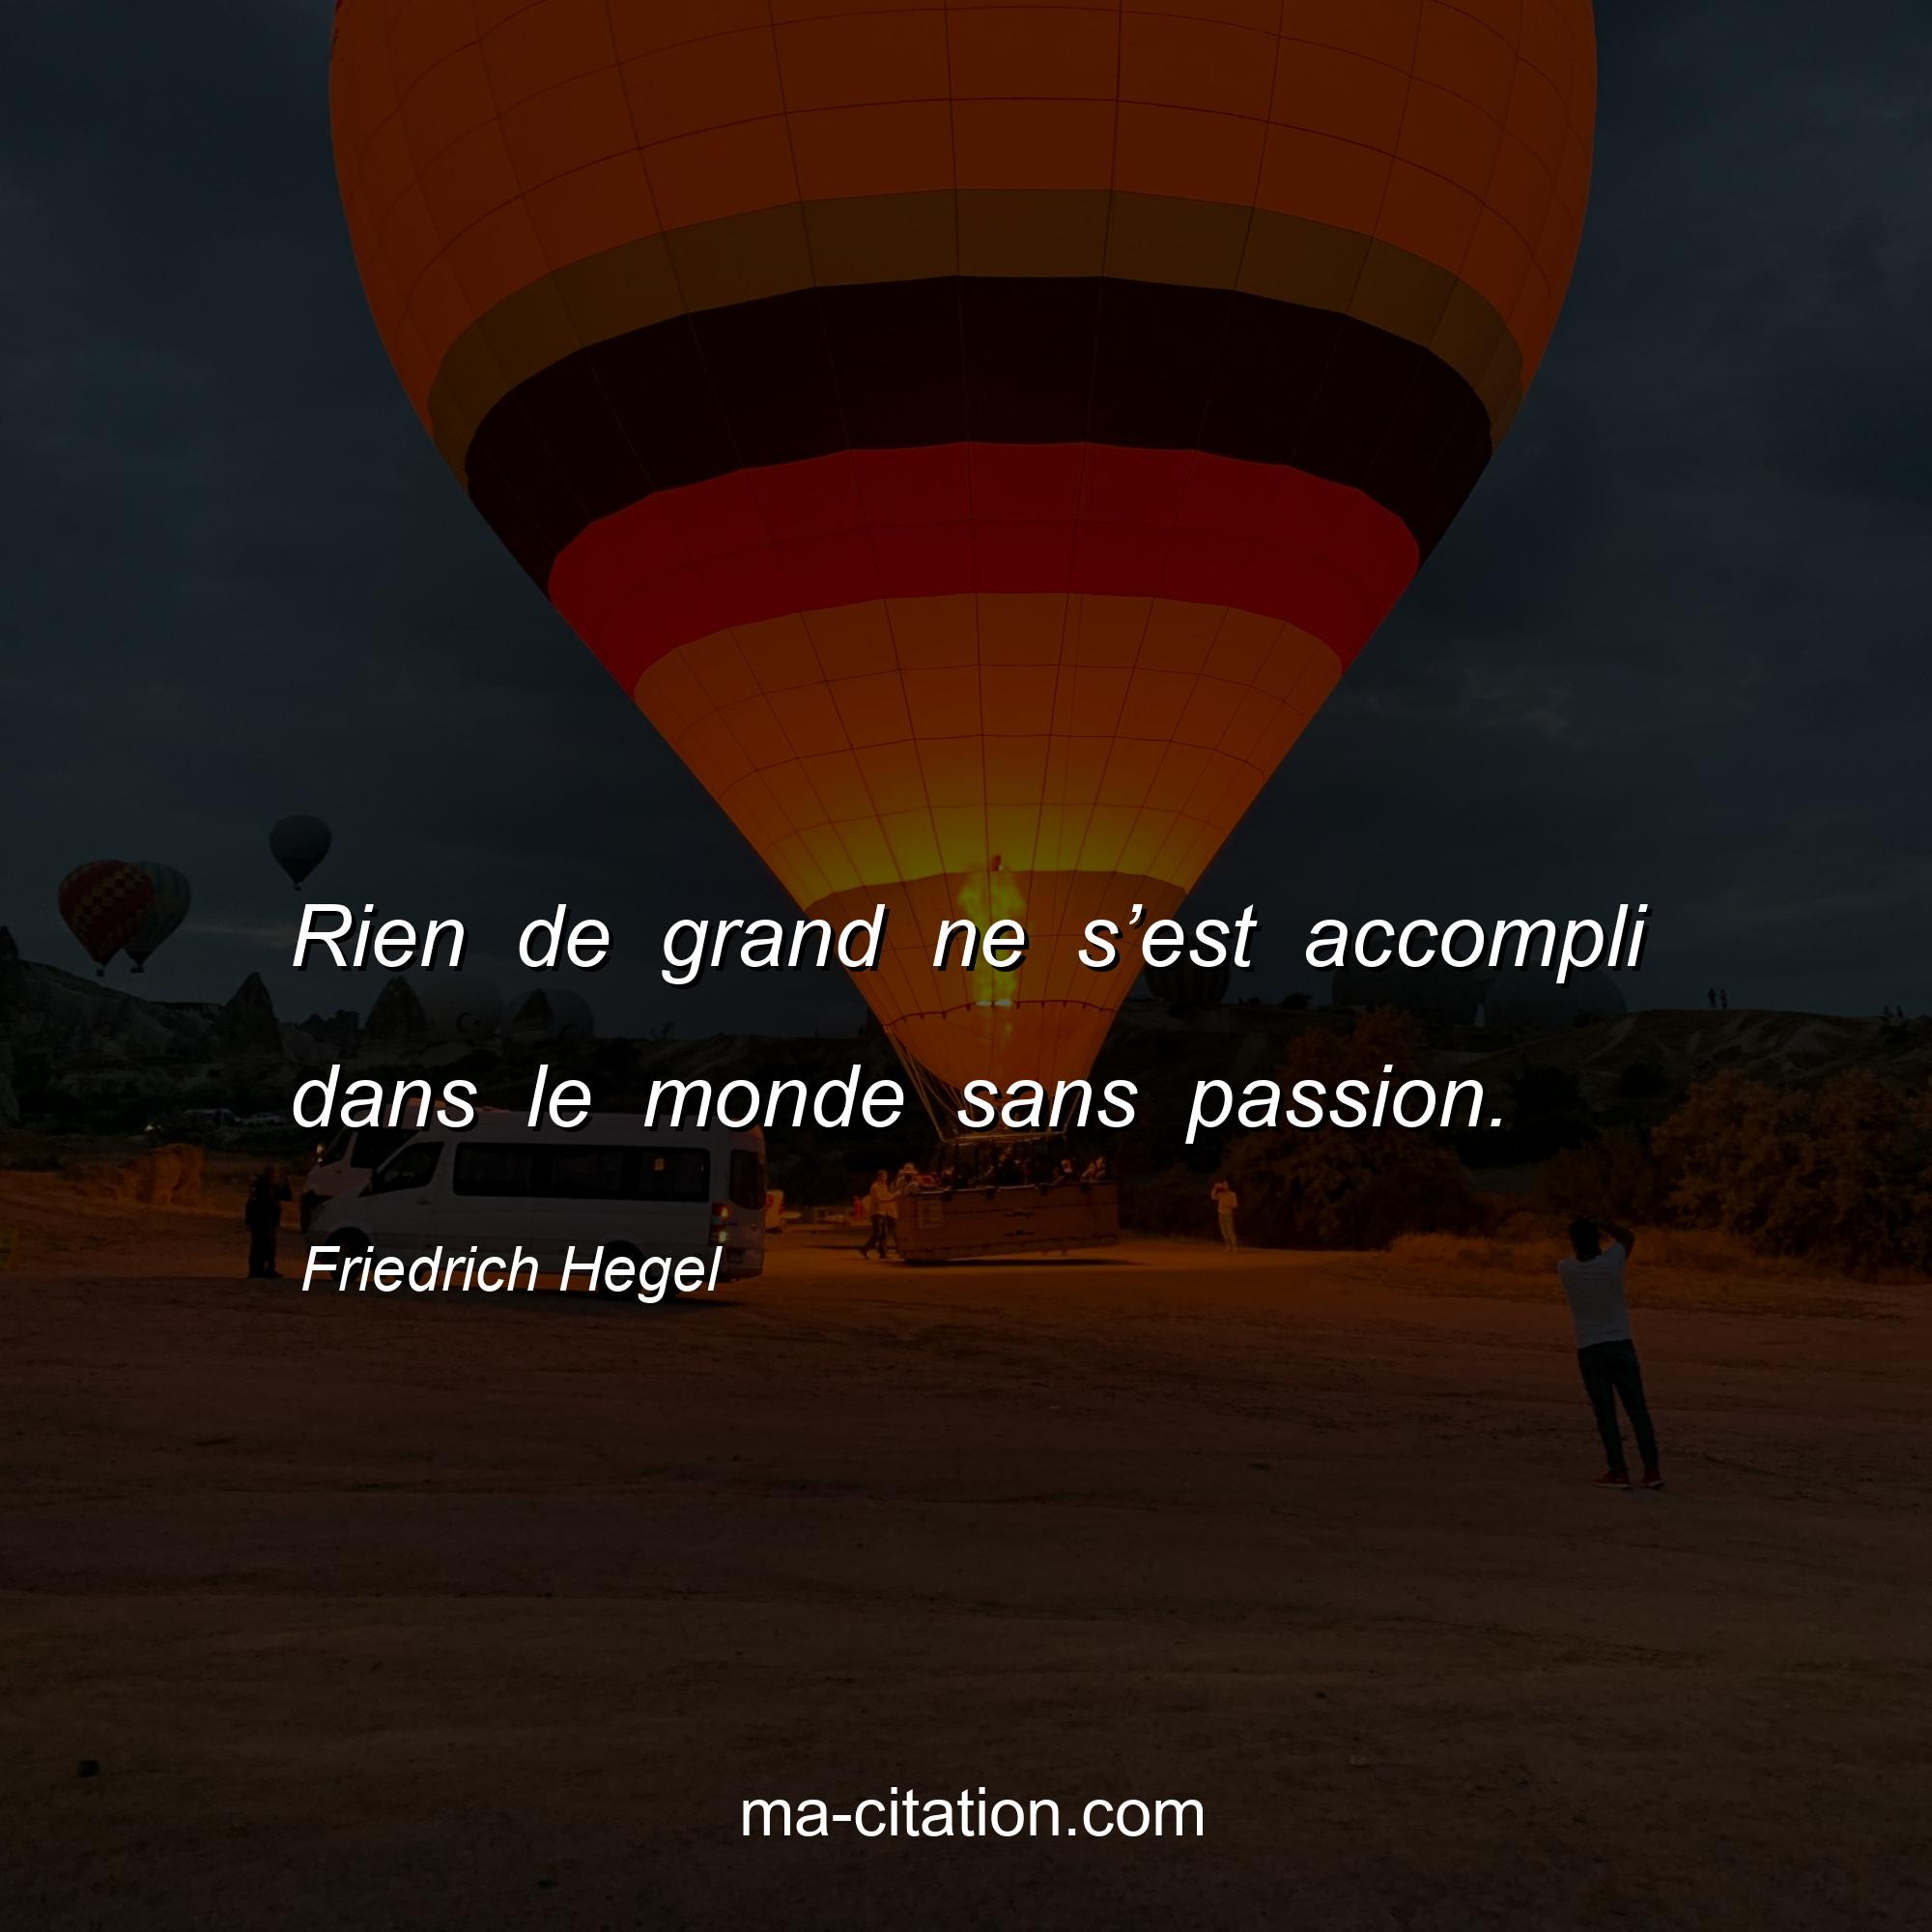 Friedrich Hegel : Rien de grand ne s’est accompli dans le monde sans passion.